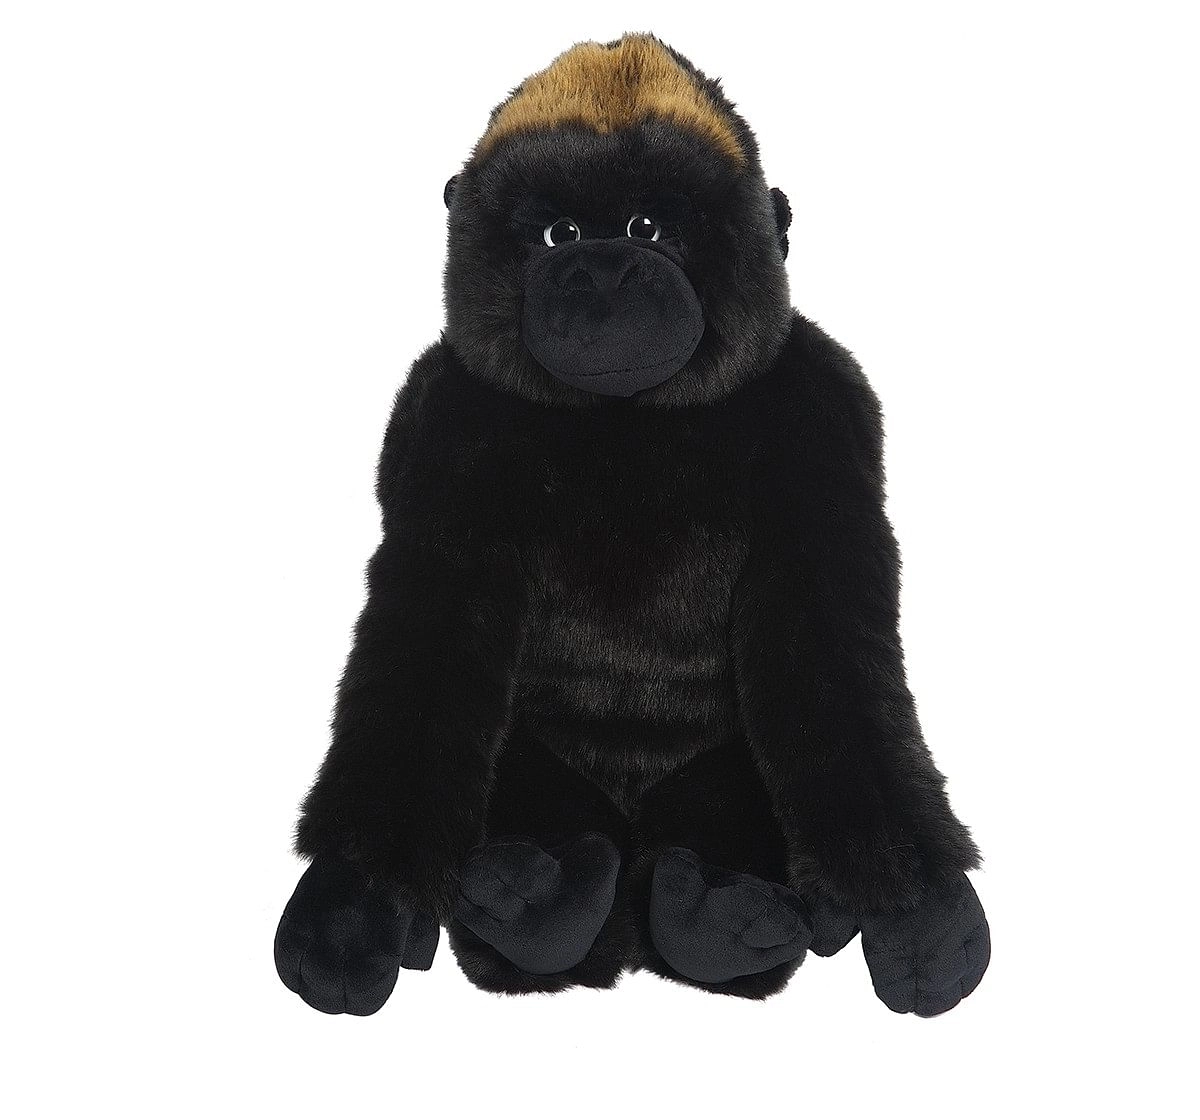 Hamleys Gideon The Gorilla Soft Toy - 10" Animals & Birds for Kids age 2Y+ - 25 Cm (Black)